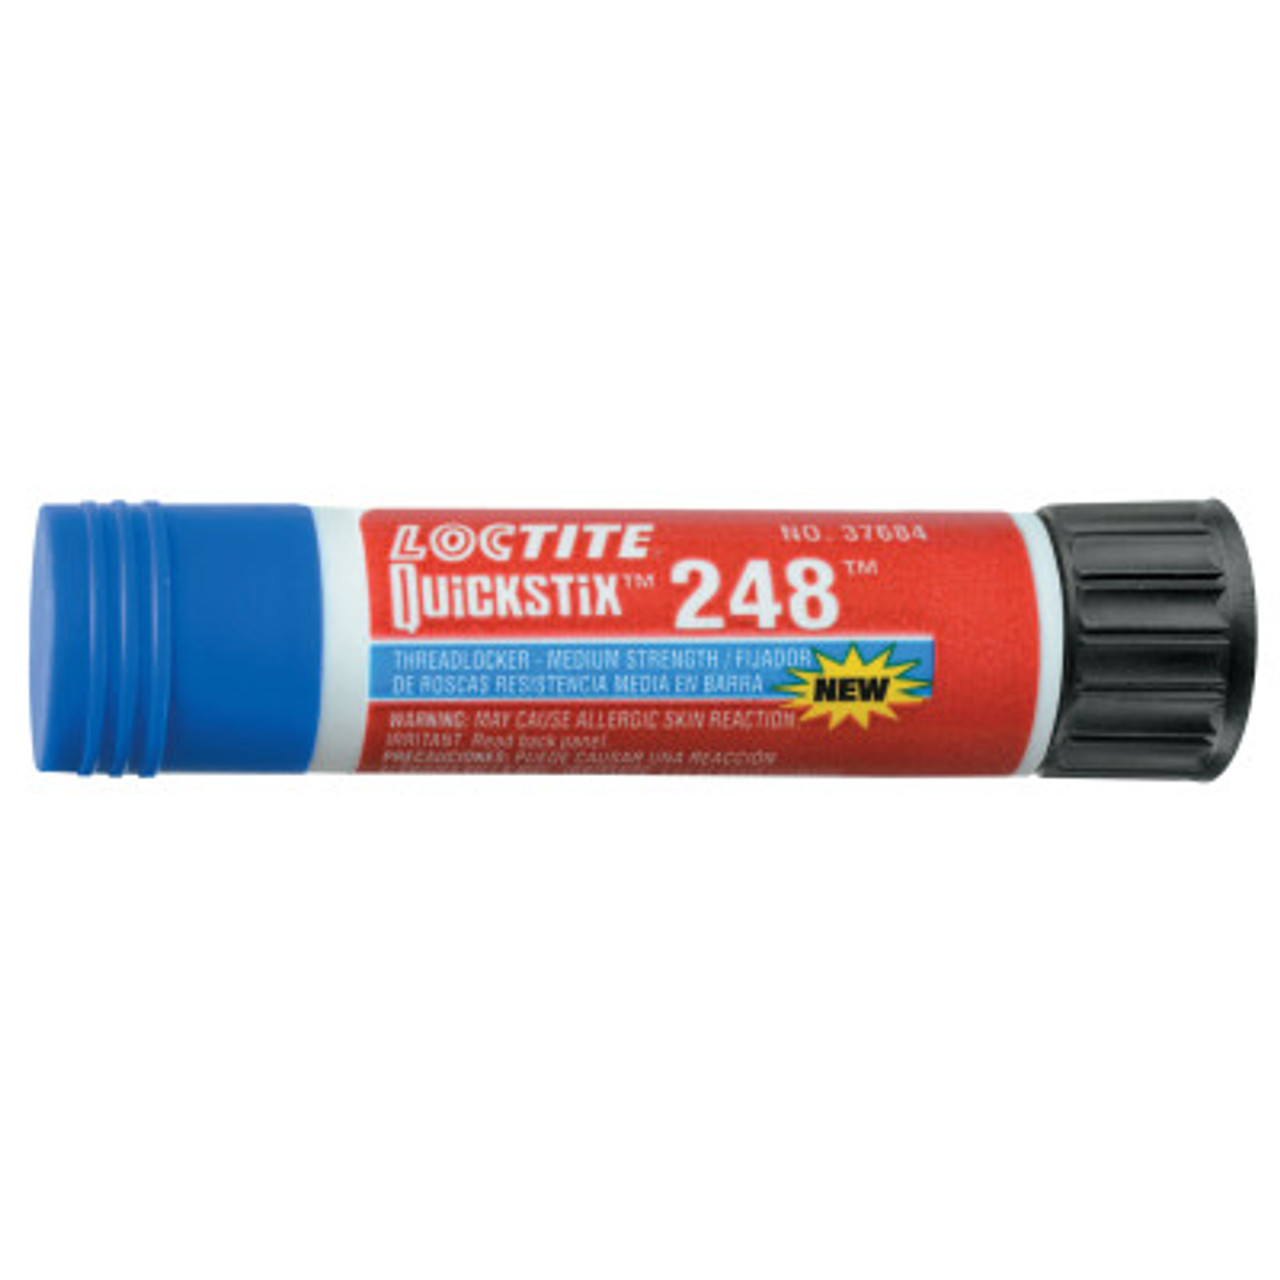 LOCTITE Primerless Medium-Strength Threadlocker: 243, Blue, Oil Tolerant,  8.45 fl oz, Bottle, 1 EA